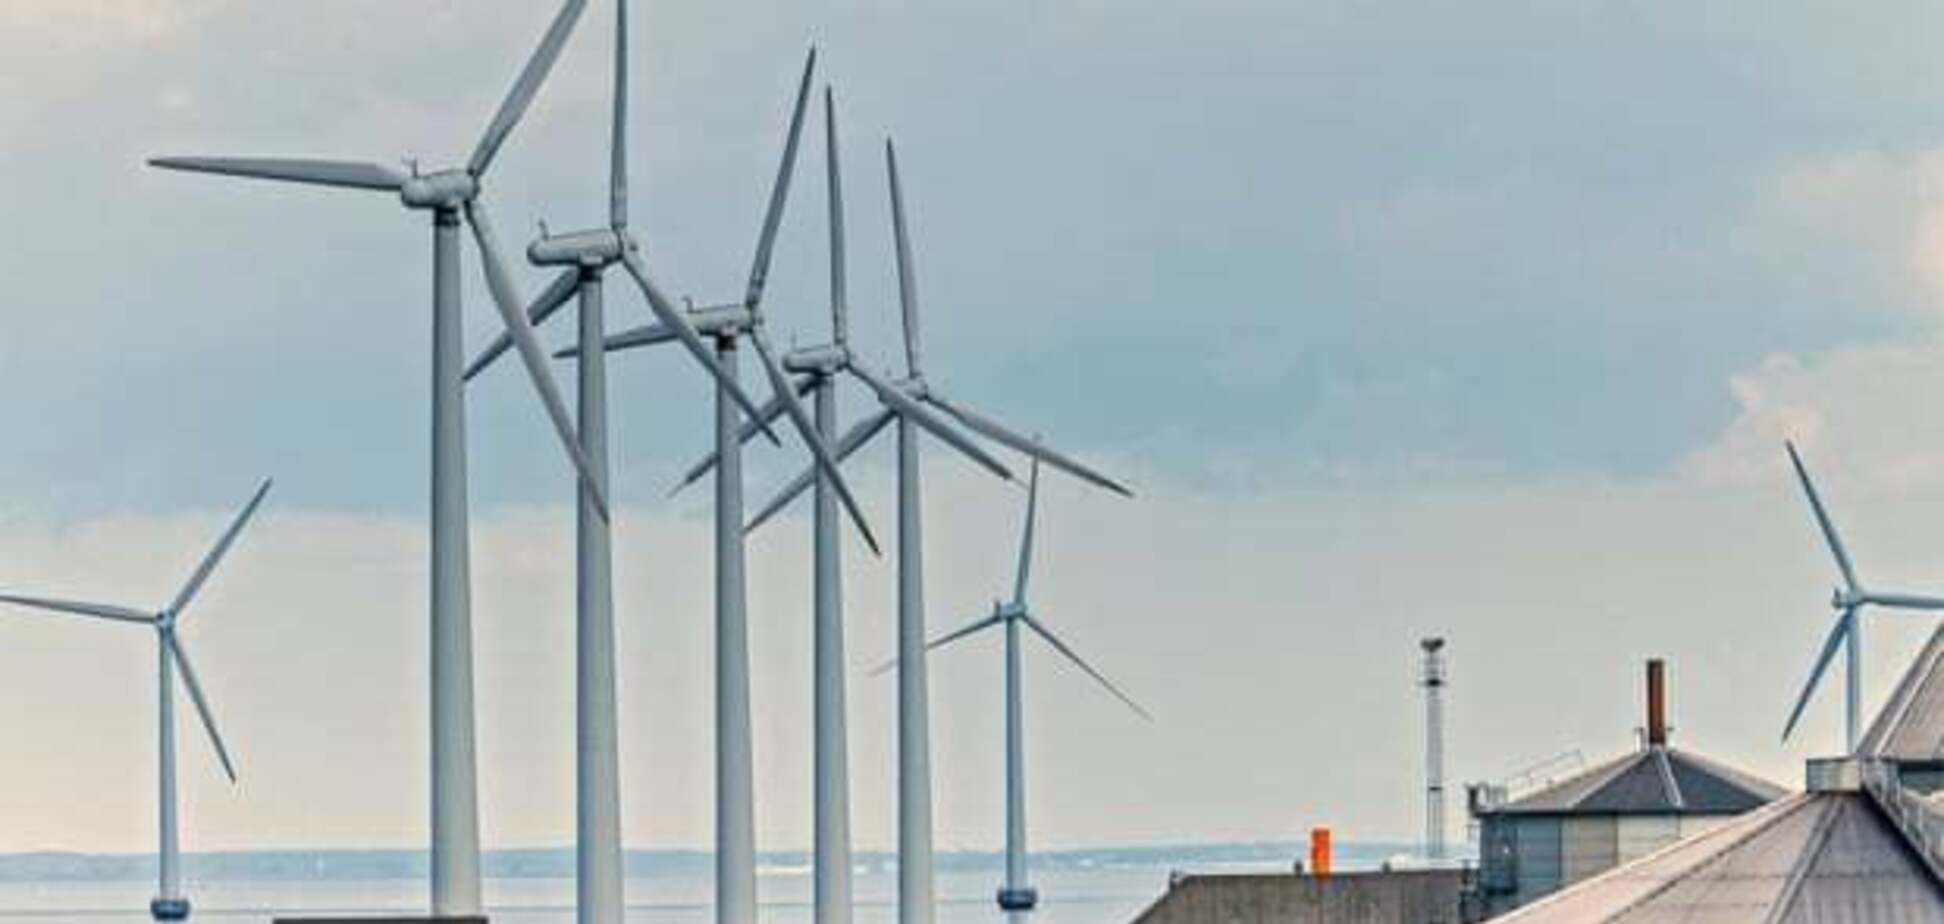 Дания разместит ветрогенераторы на островах в море: озвучена причина